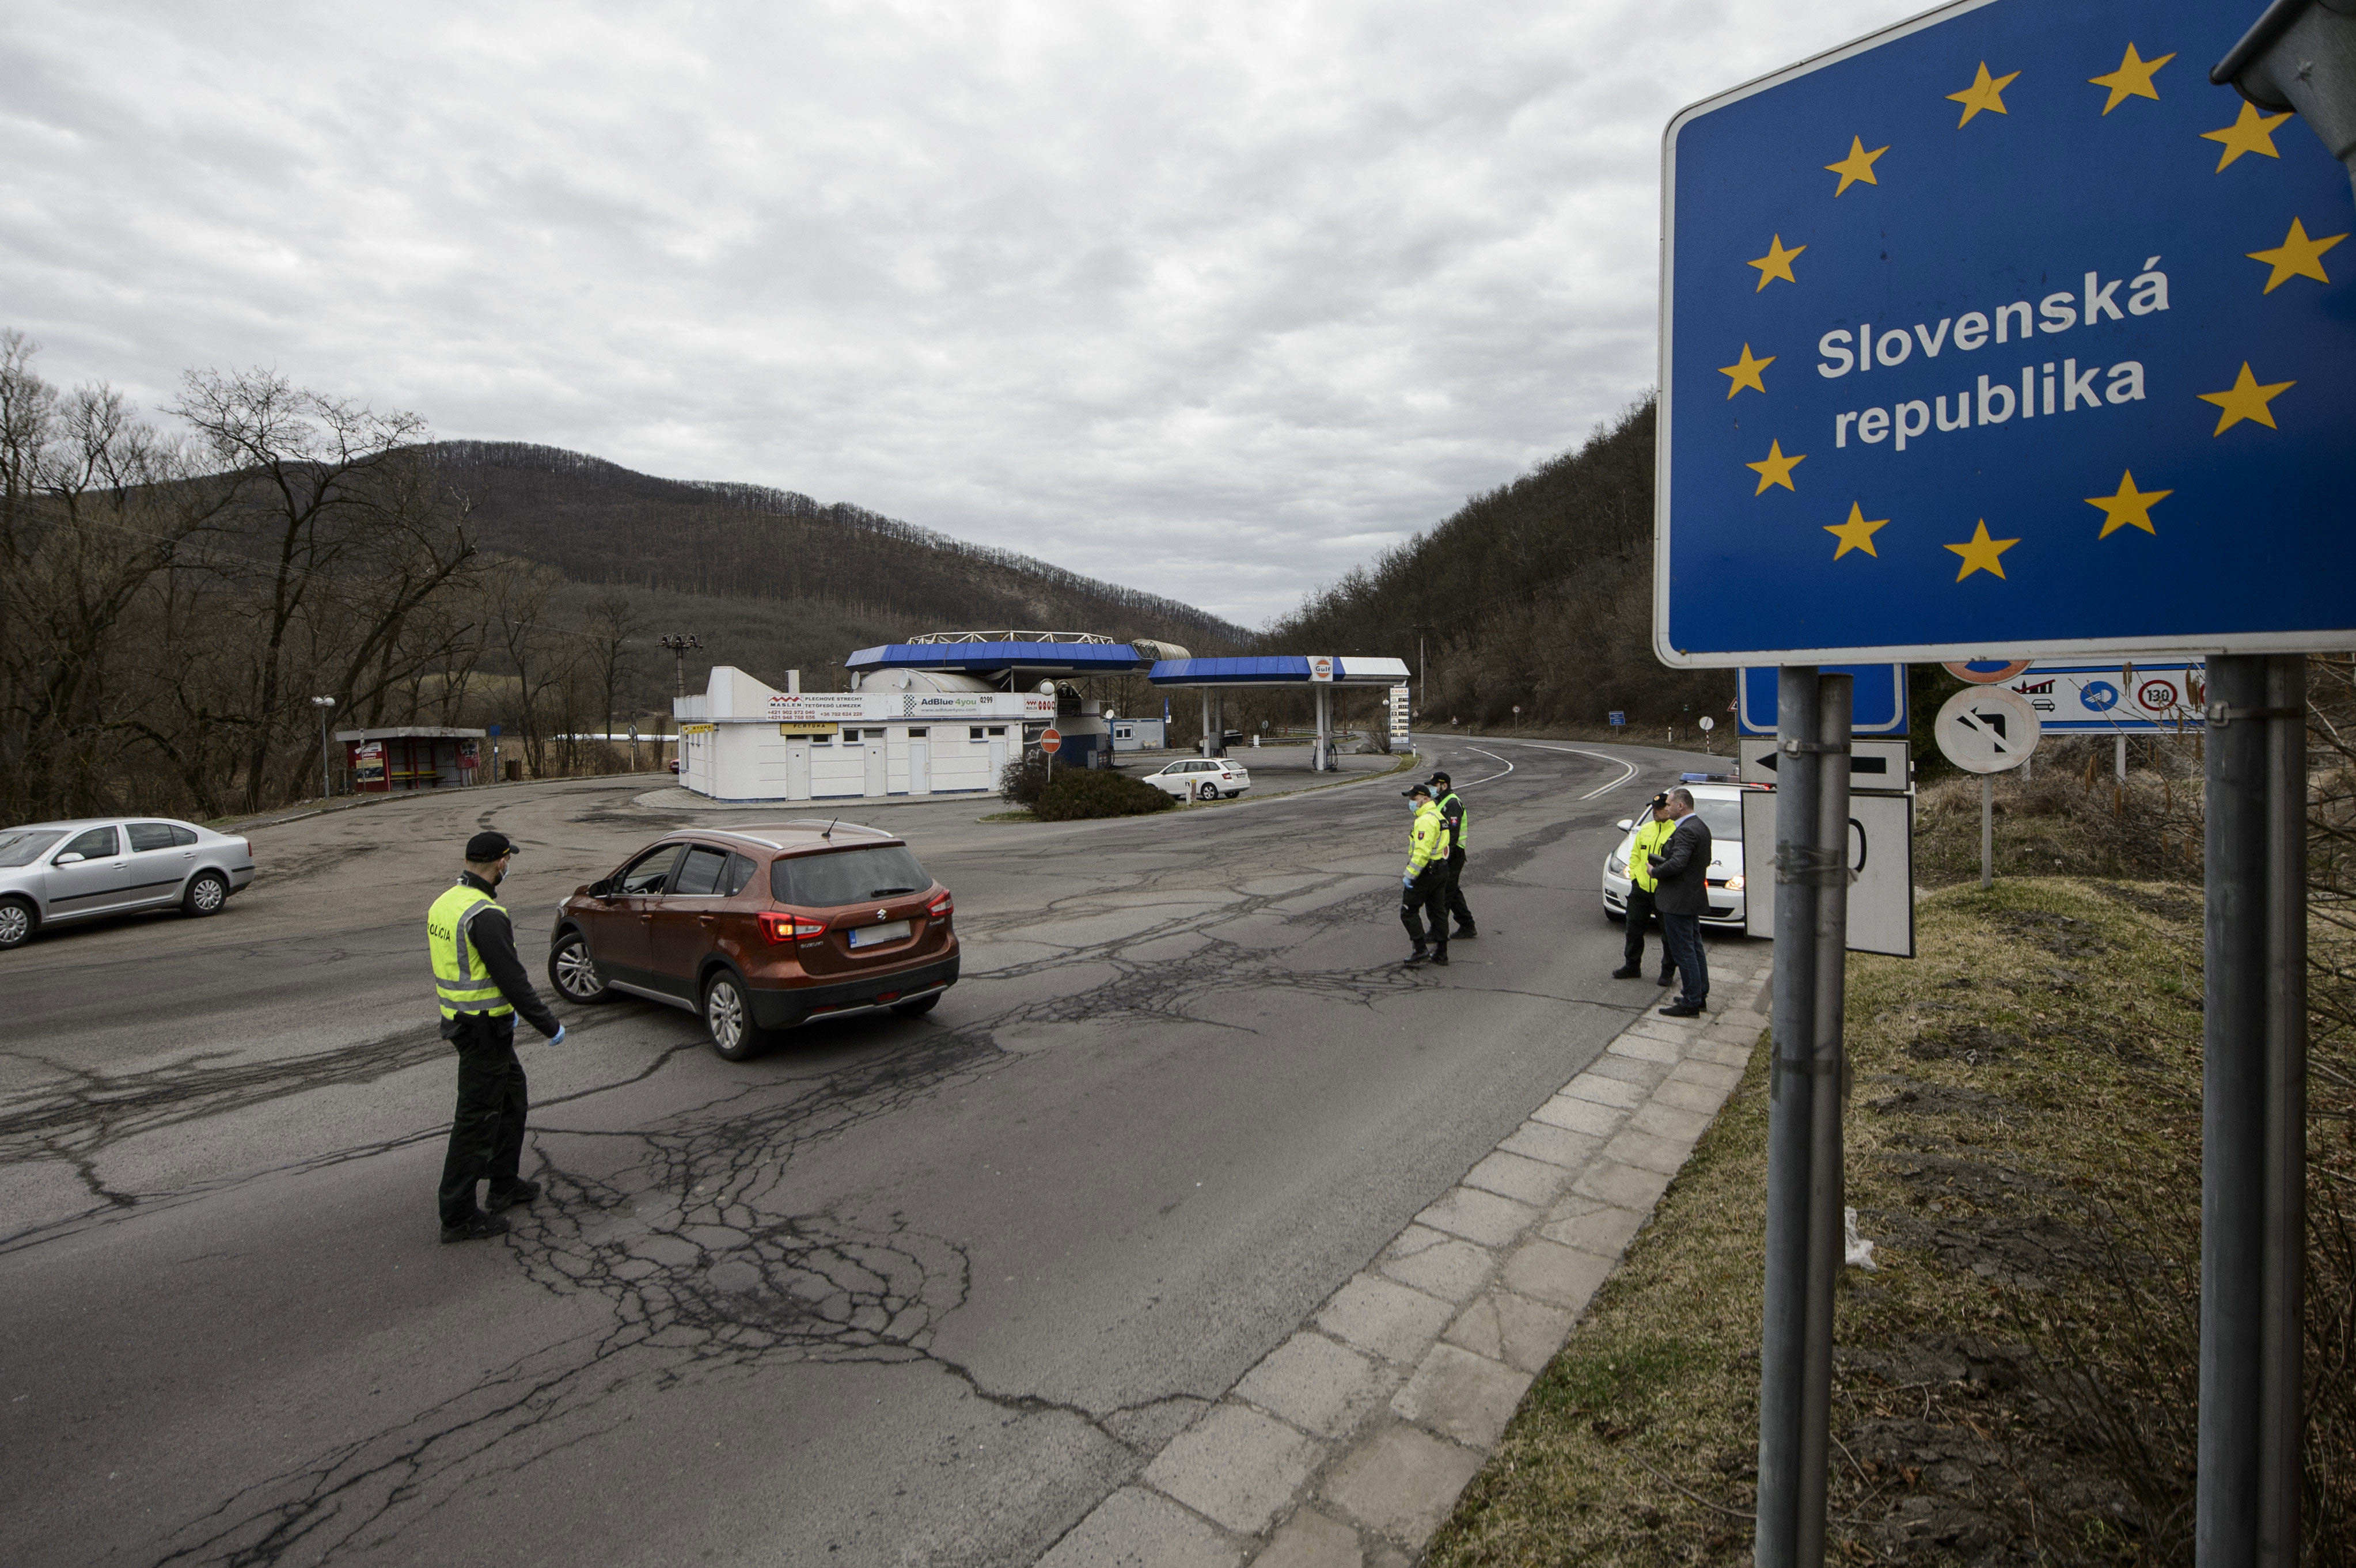 Szlovákia akkor sem nyitja meg a határait, ha más országok igen